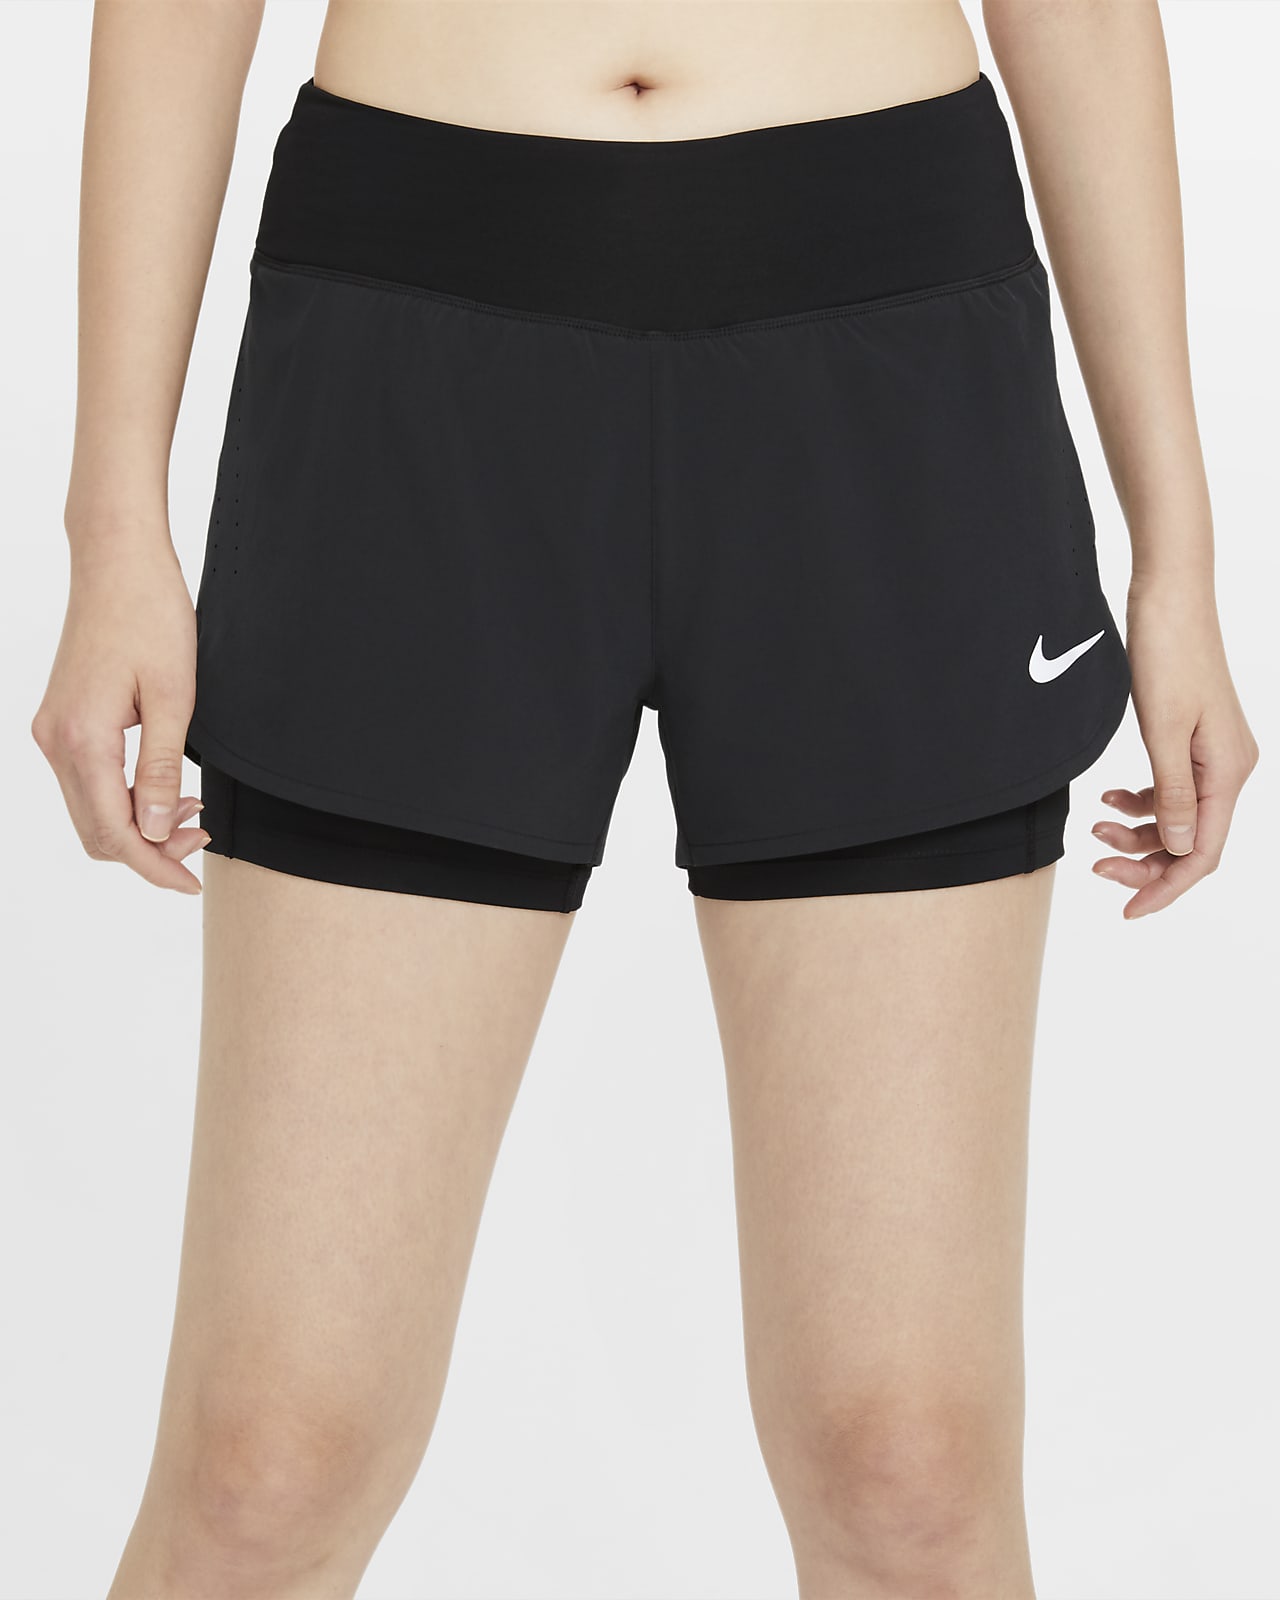 Short Nike Feaminino 2 em 1 - Planeta Tenis